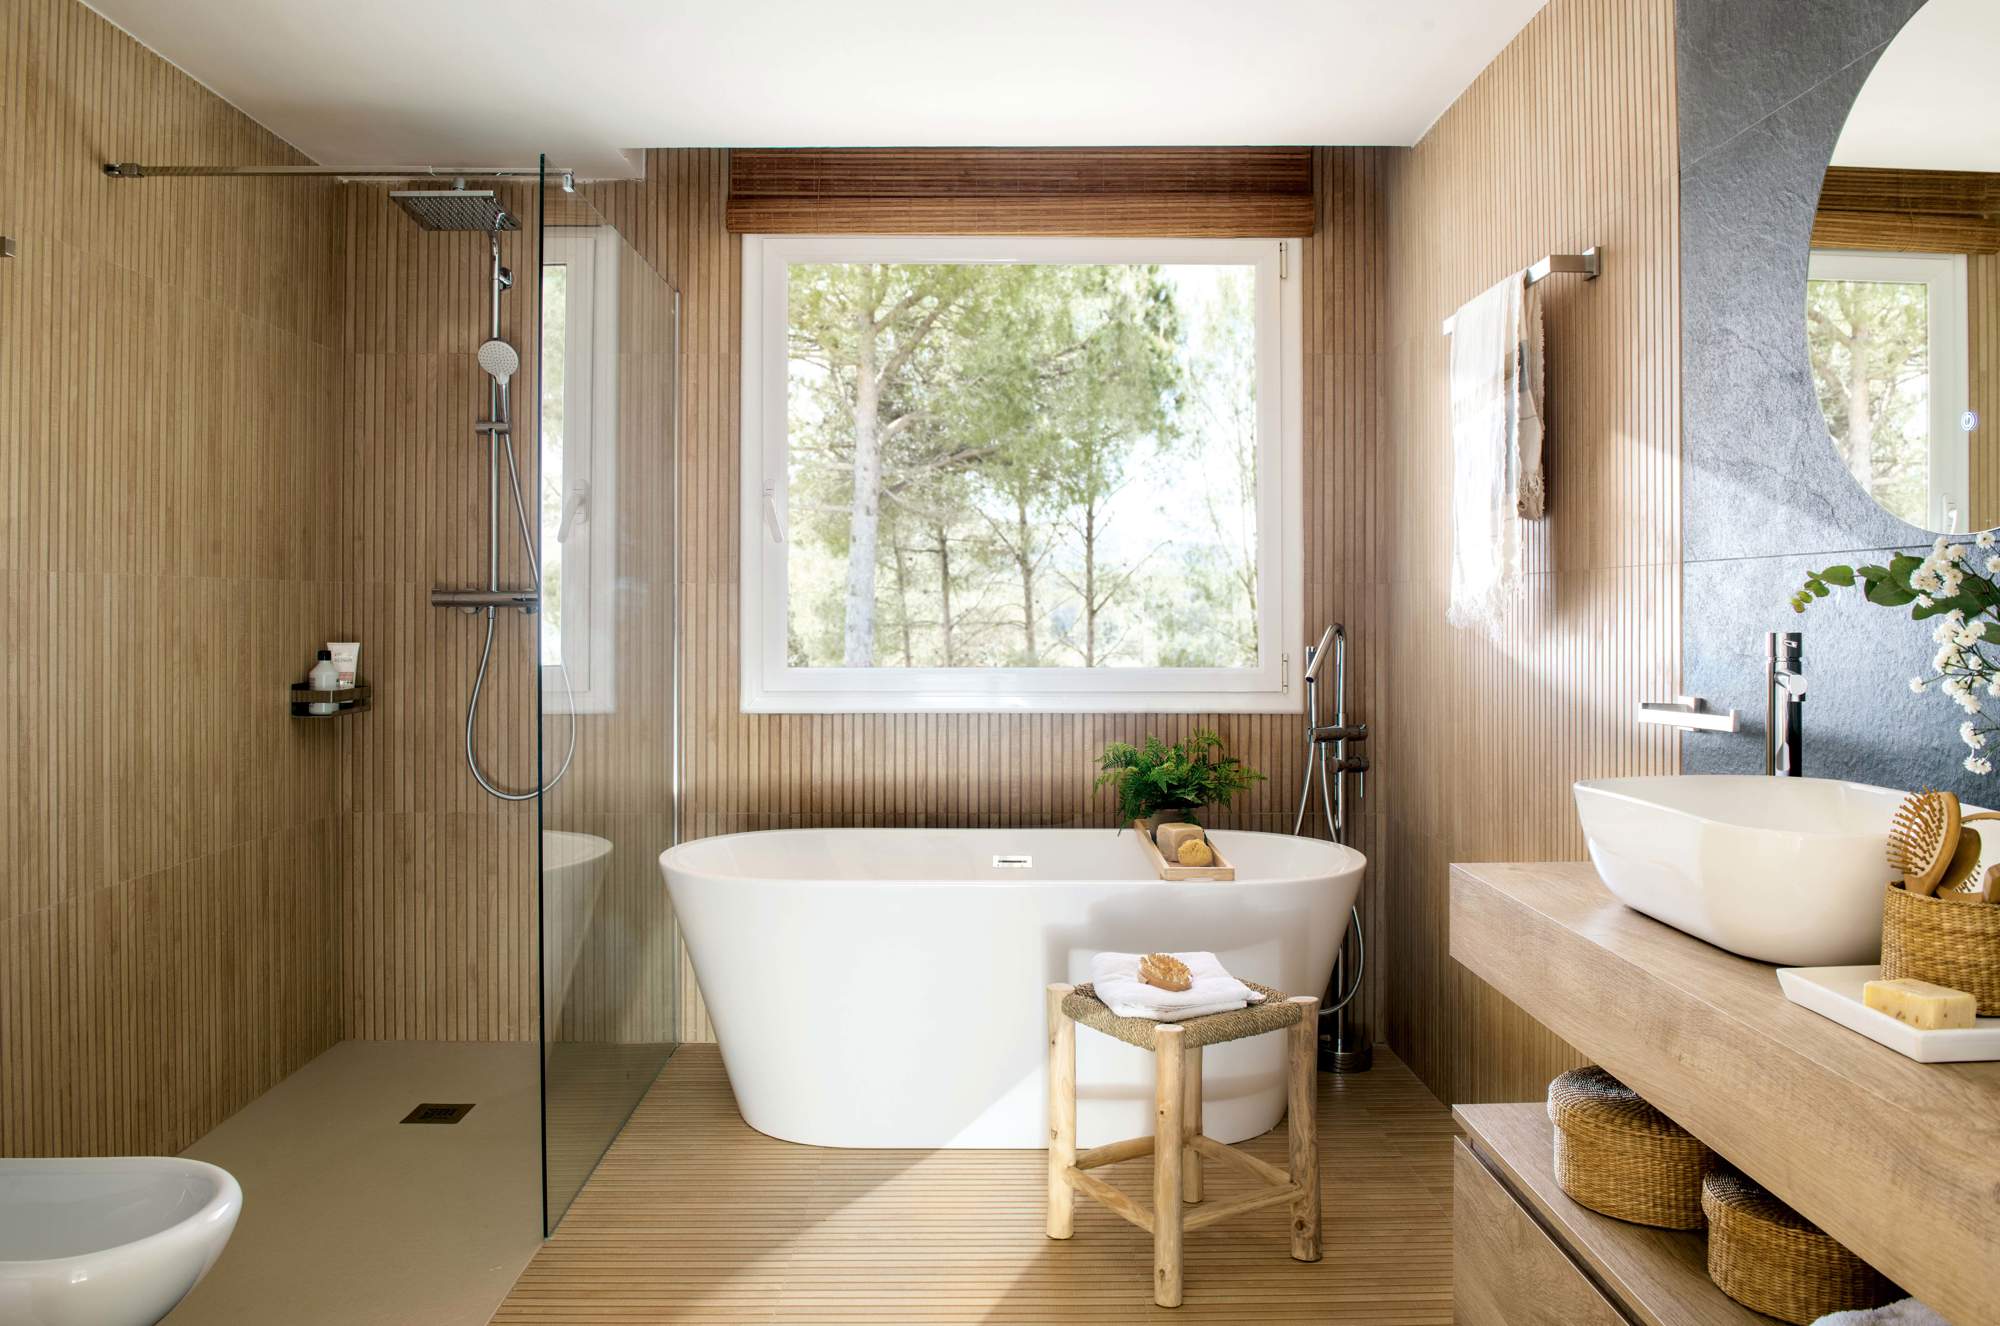 Baño con ducha y bañera revestido de madera